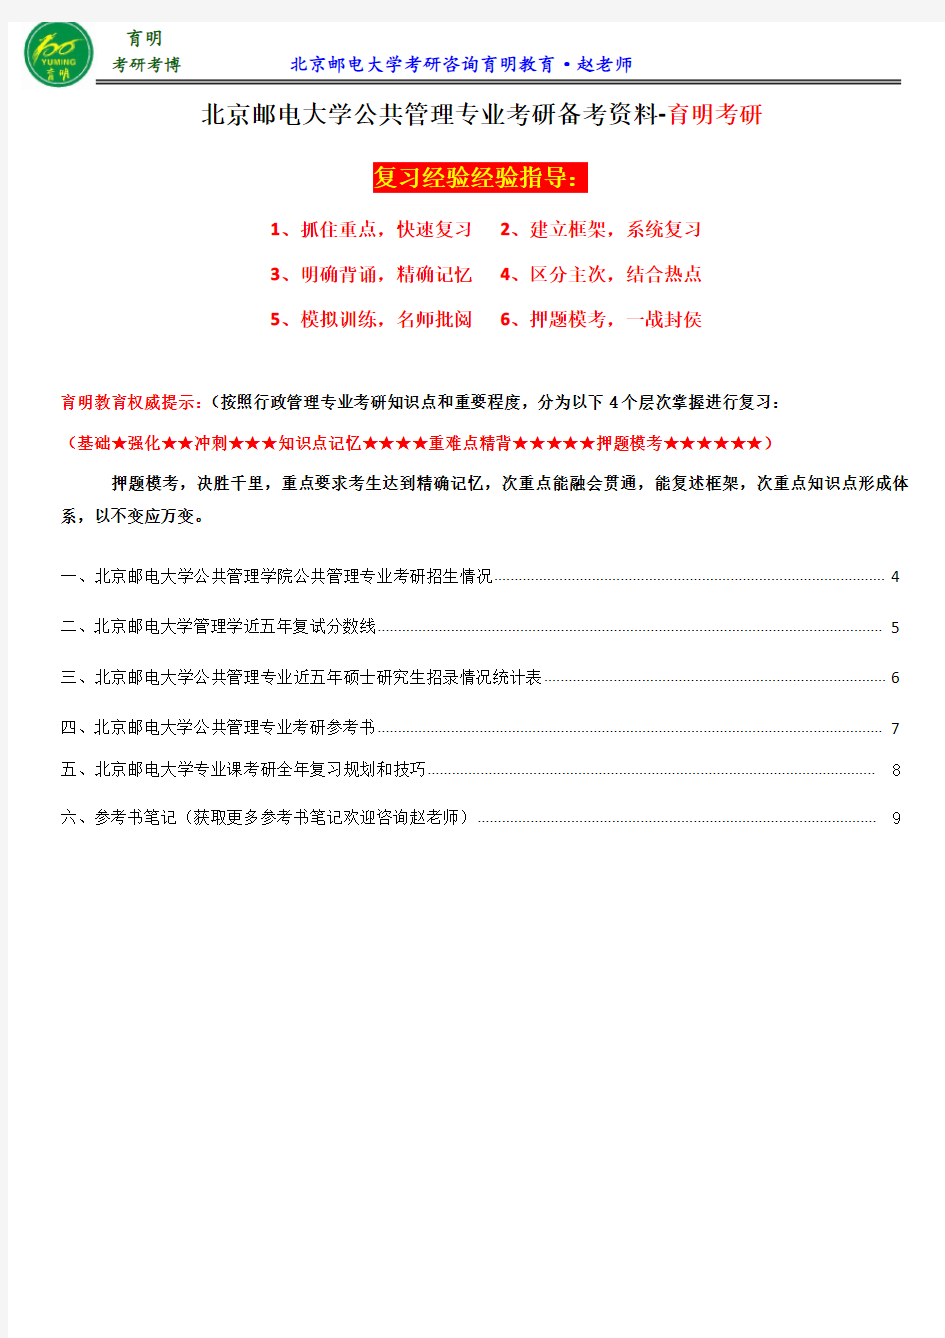 2017年北京邮电大学公共管理专业考研参考书目、考试科目、考研心得、张成福《公共管理学》考研重要笔记分享